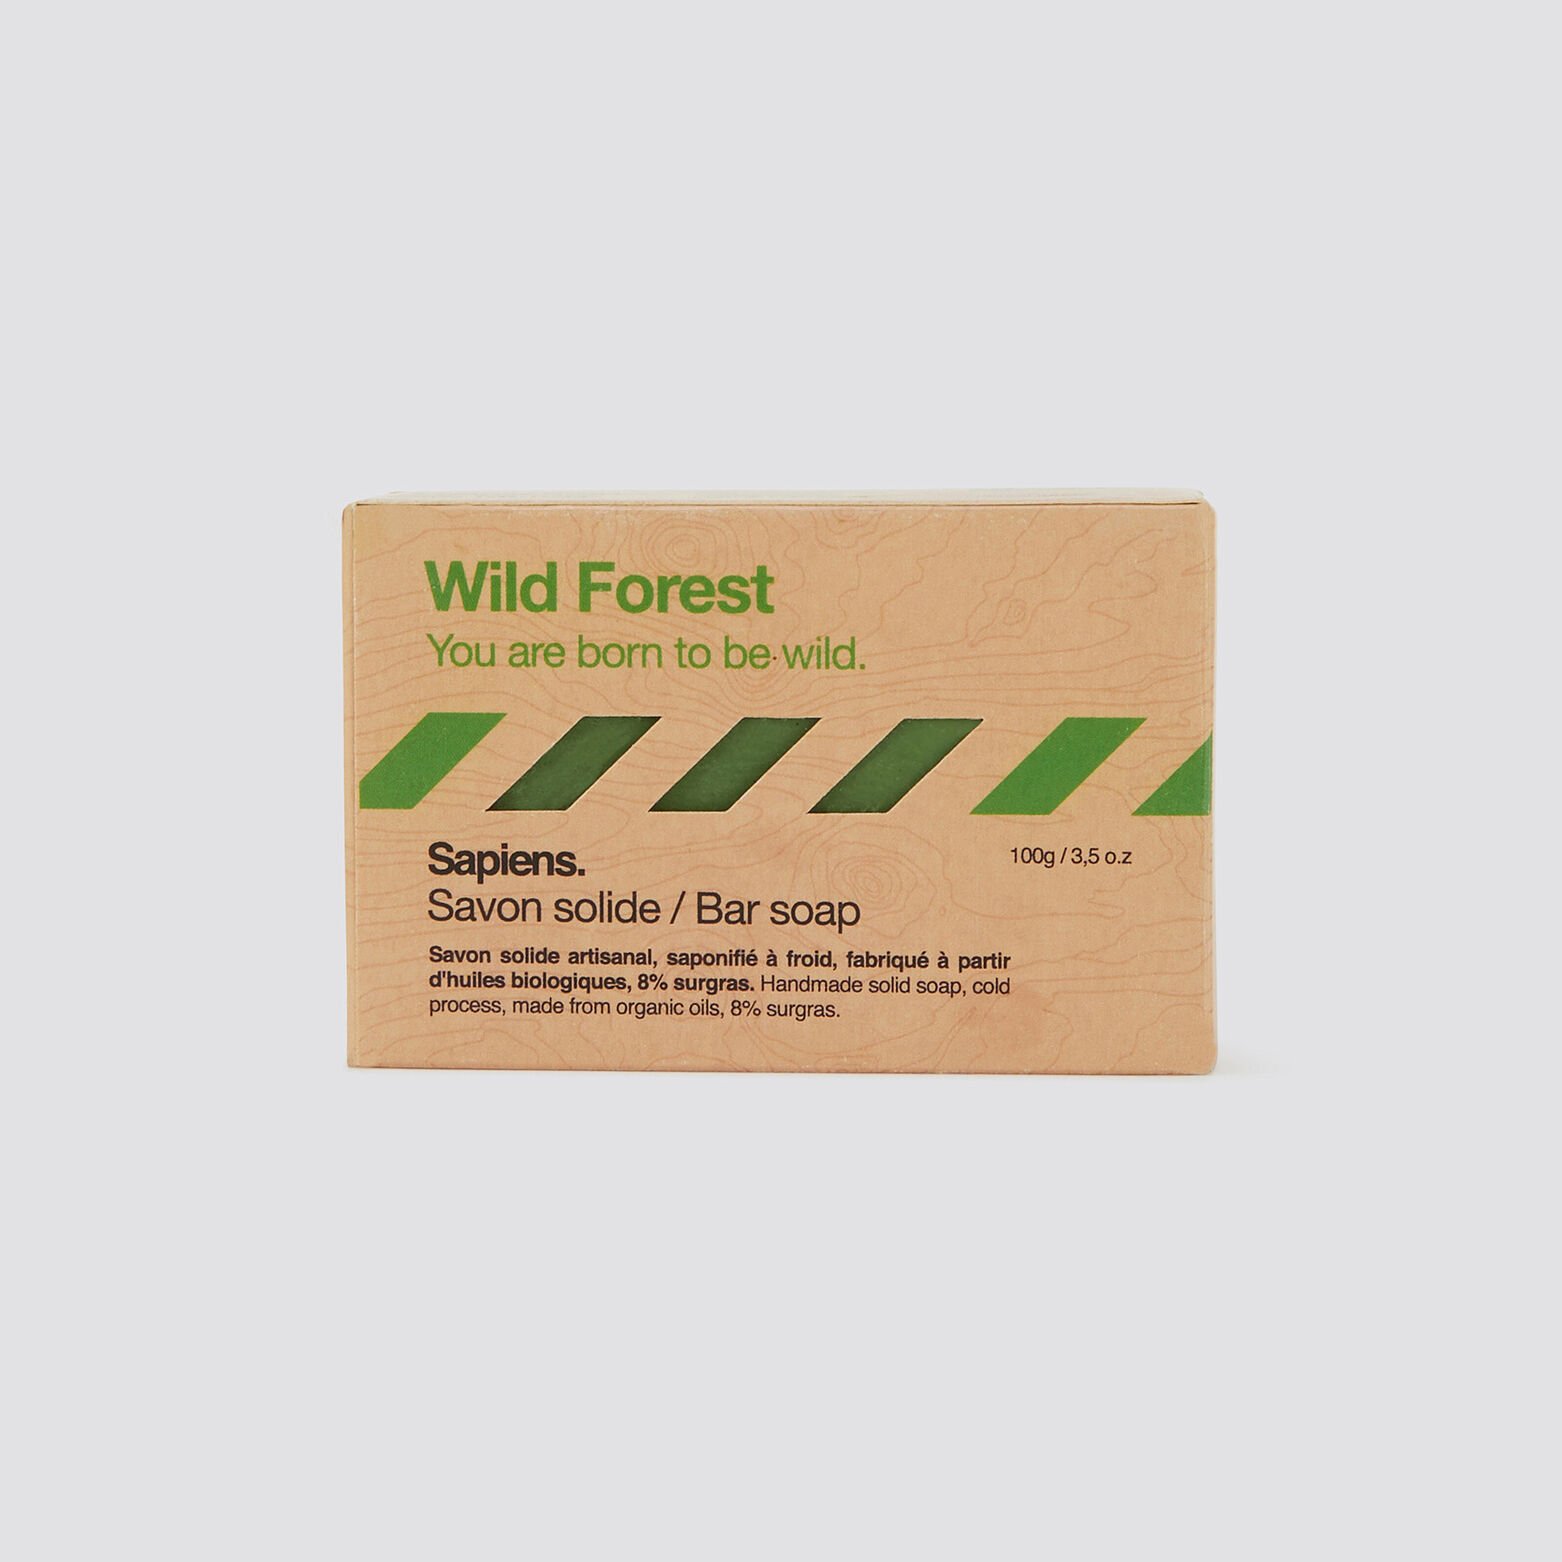 Savon solide wild forest